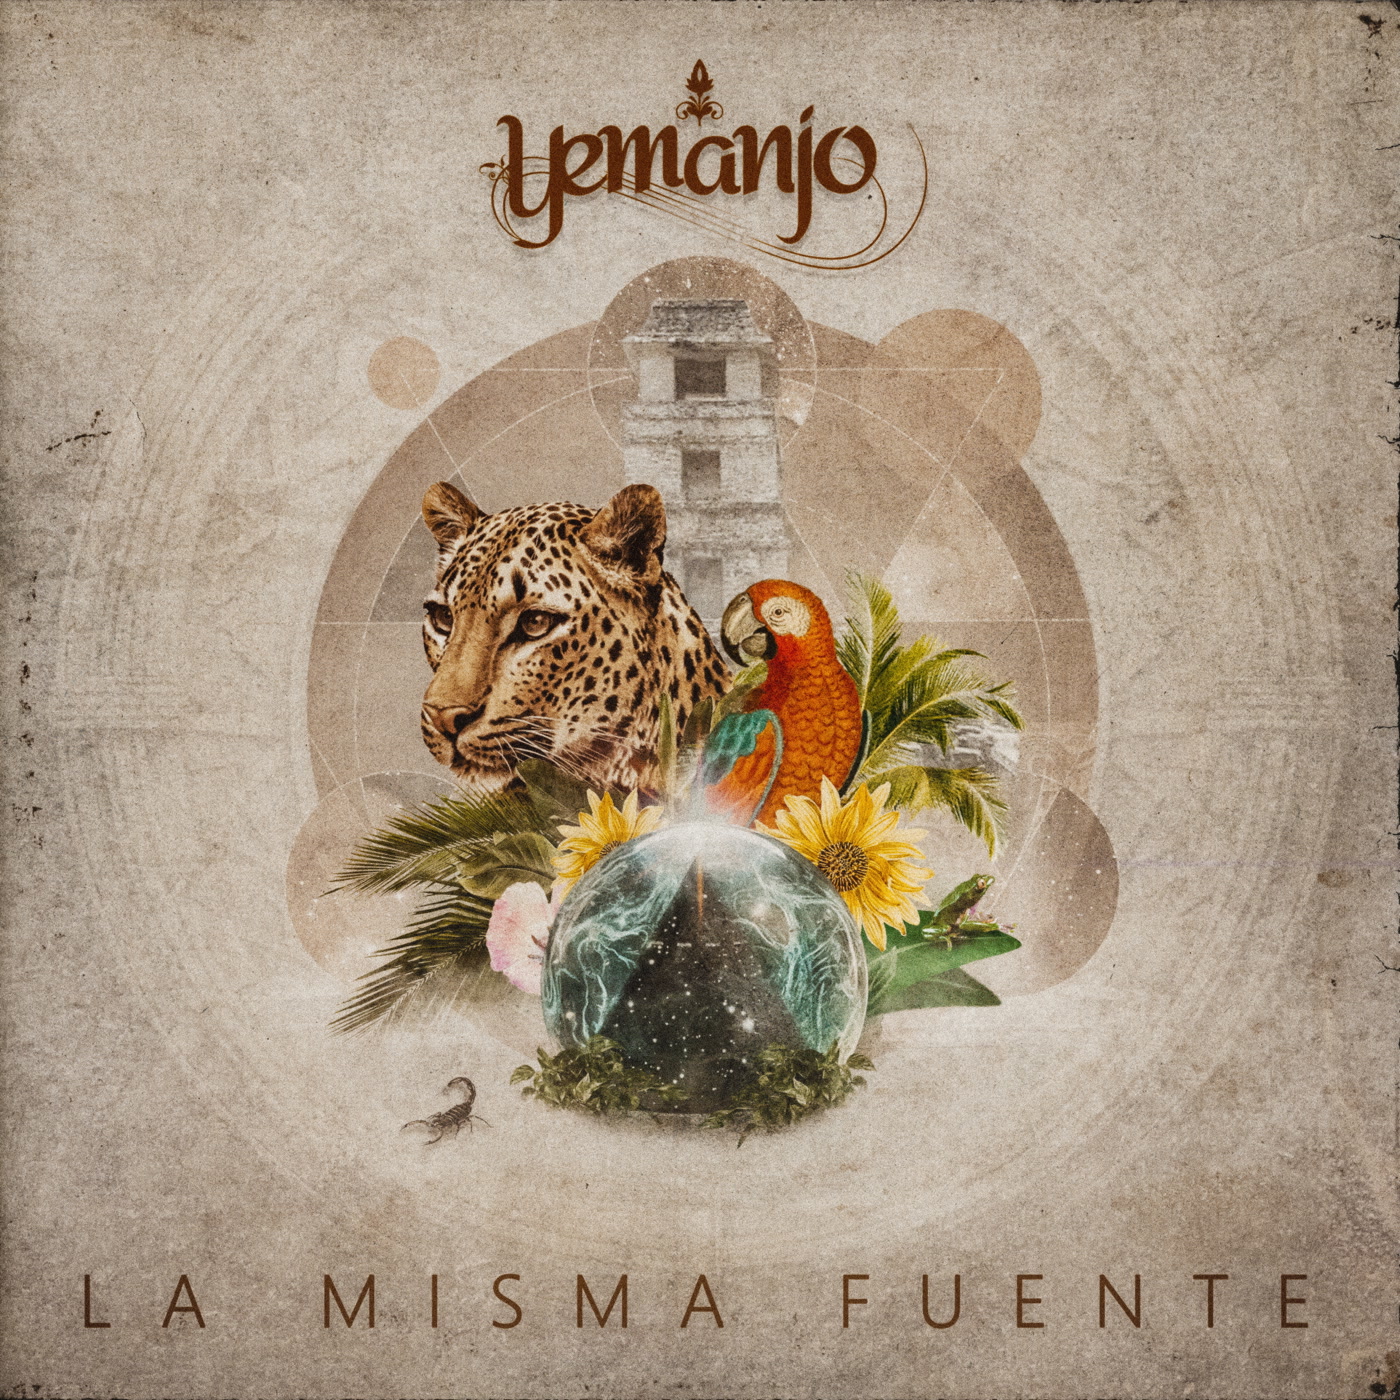 Yemanjo – La Misma Fuente (Wonderwheel)